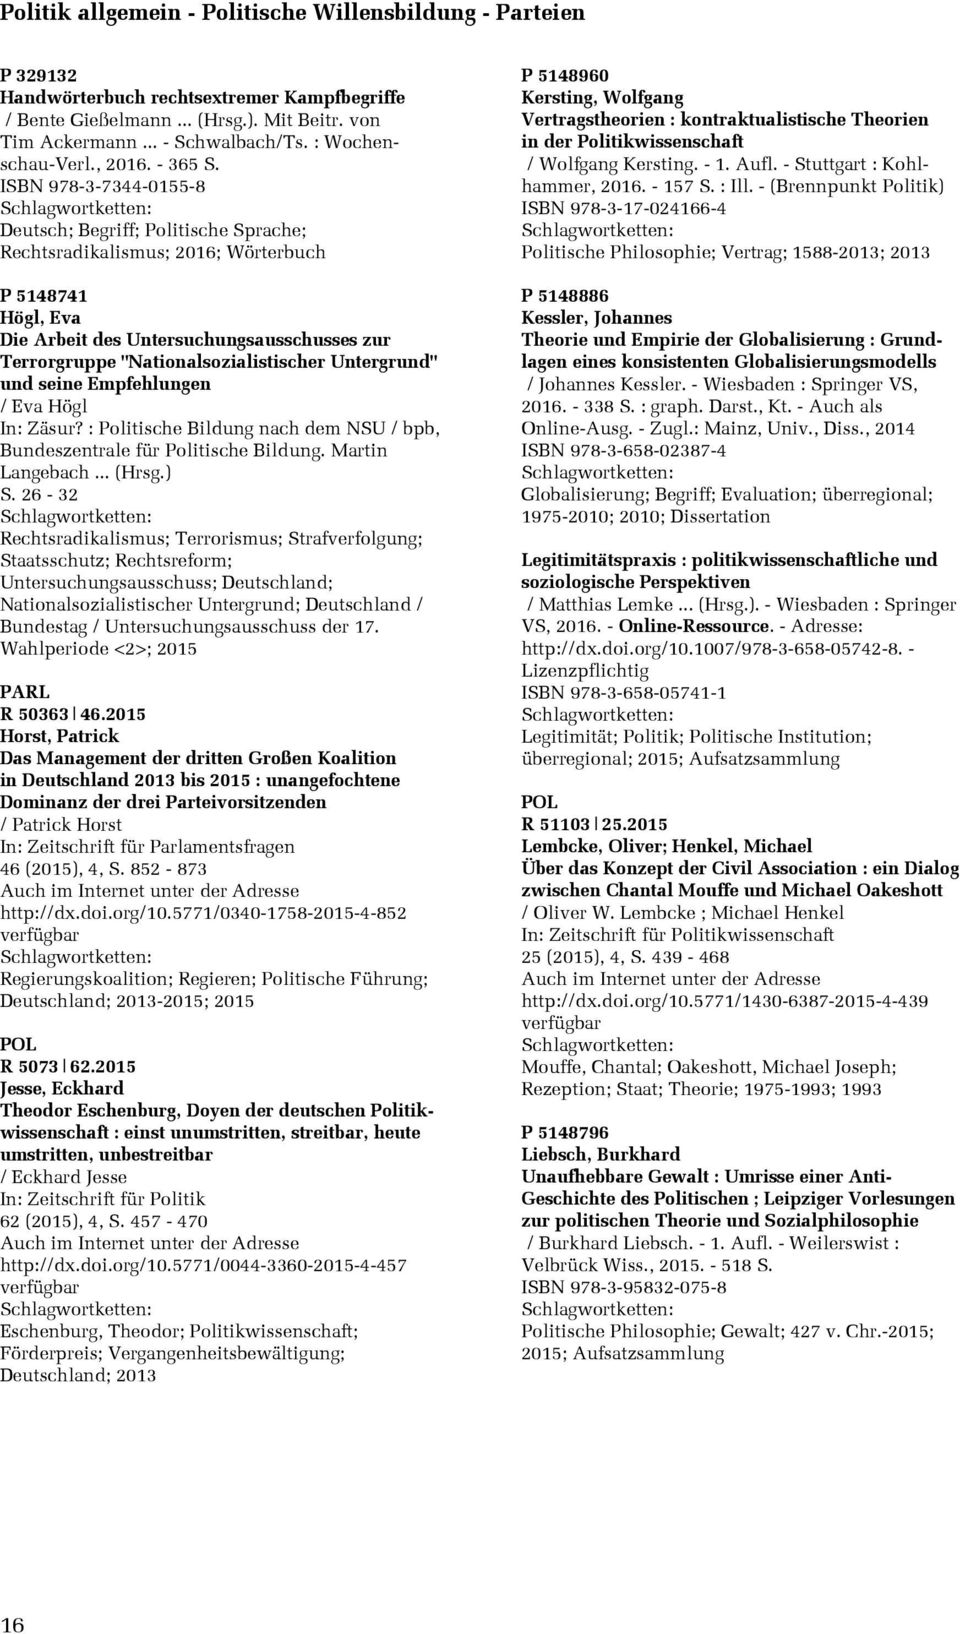 ISBN 978-3-7344-0155-8 Deutsch; Begriff; Politische Sprache; Rechtsradikalismus; 2016; Wörterbuch P 5148741 Högl, Eva Die Arbeit des Untersuchungsausschusses zur Terrorgruppe "Nationalsozialistischer